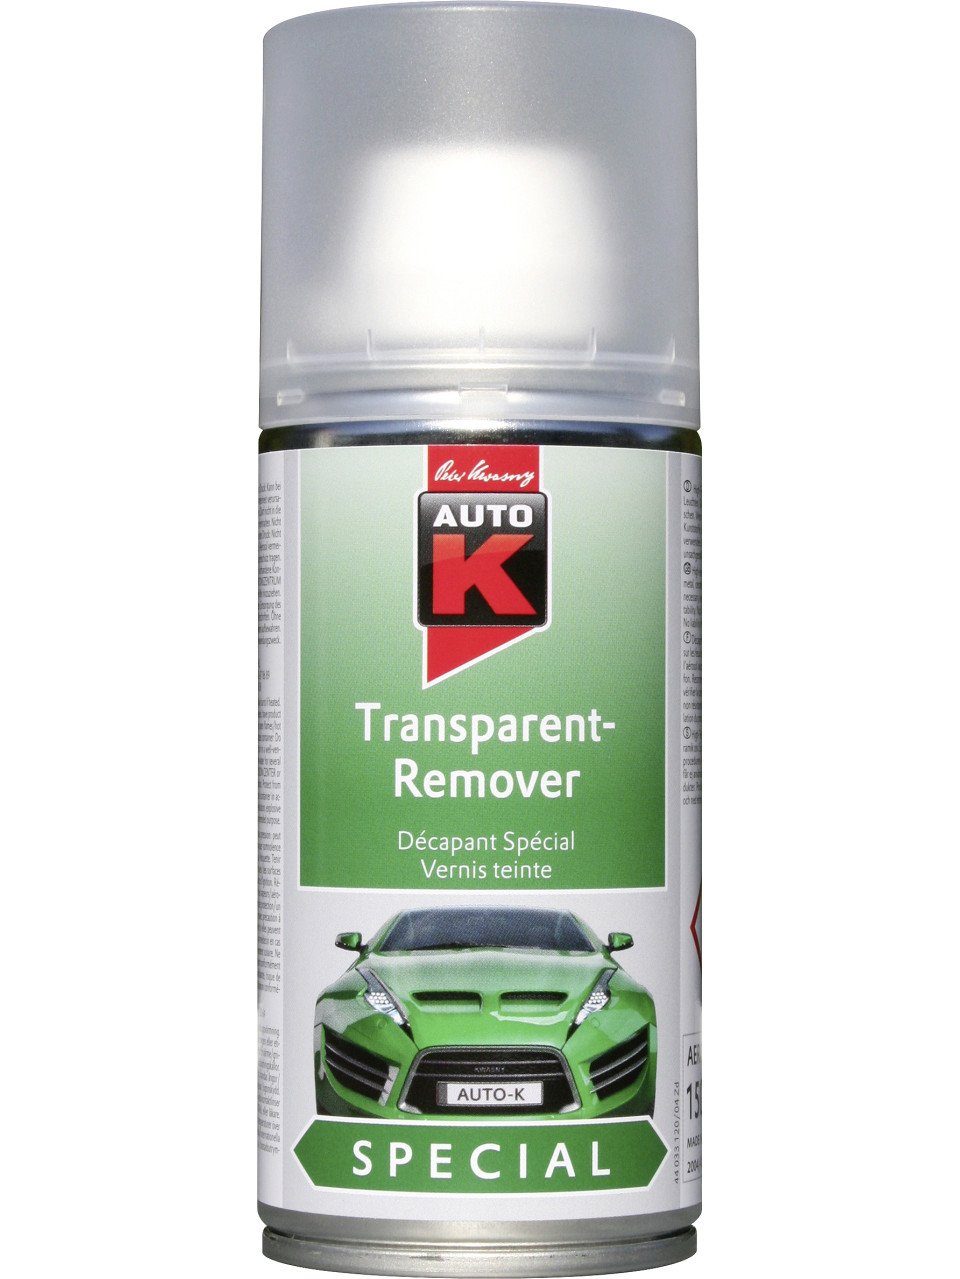 Auto-K Lack Auto-K Transparent Remover 150ml Special farblos